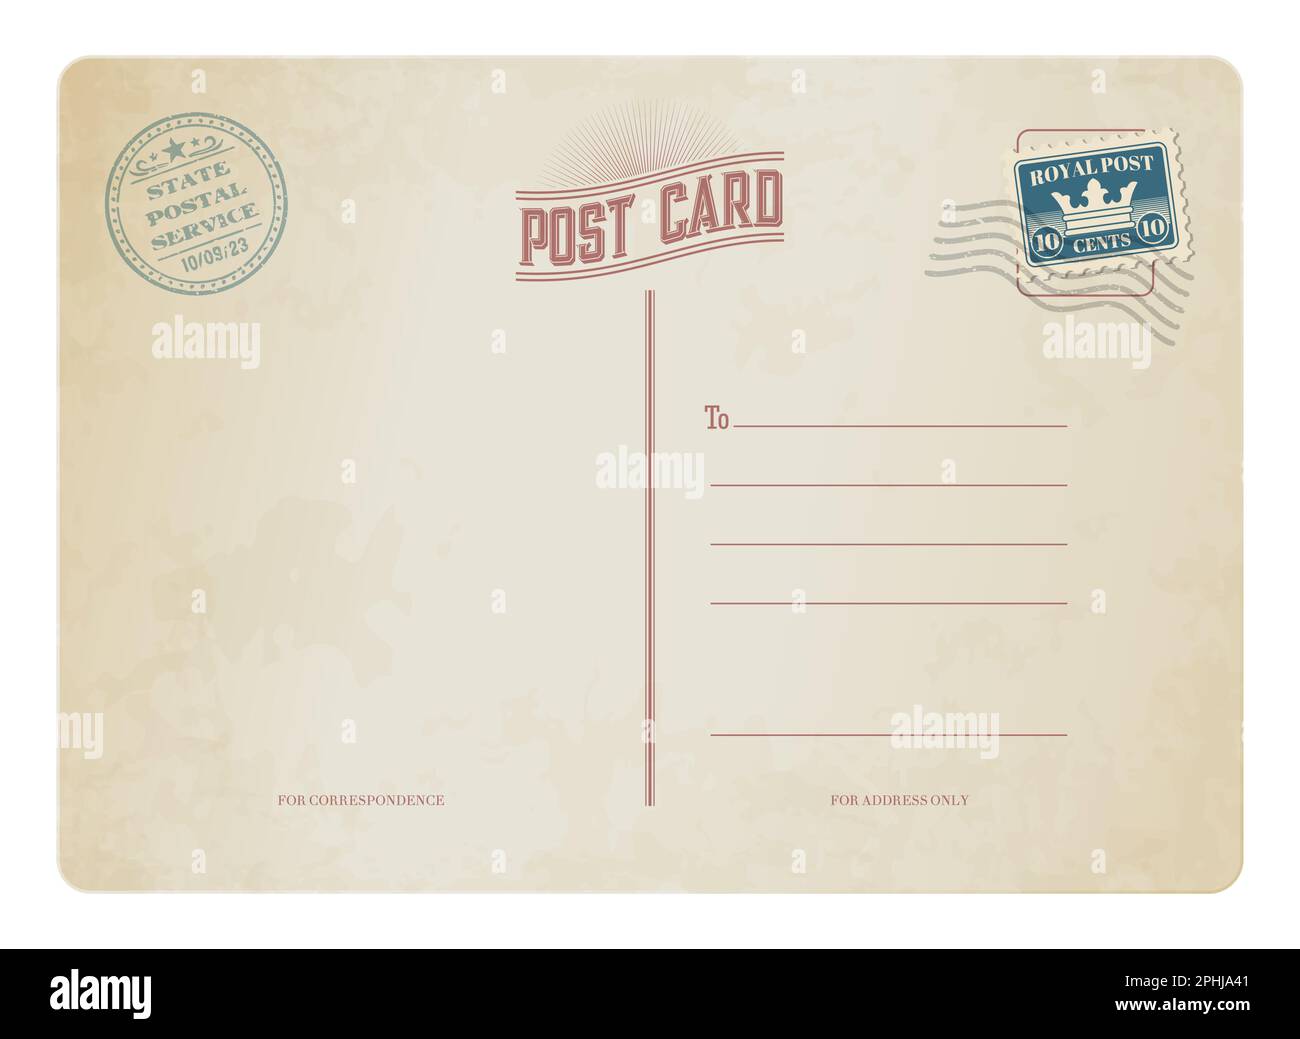 Carte postale ancienne, timbre-poste rétro sur carte postale vintage,  arrière-plan postal vectoriel. Ancienne carte postale antique avec timbre- poste de la poste royale avec Image Vectorielle Stock - Alamy